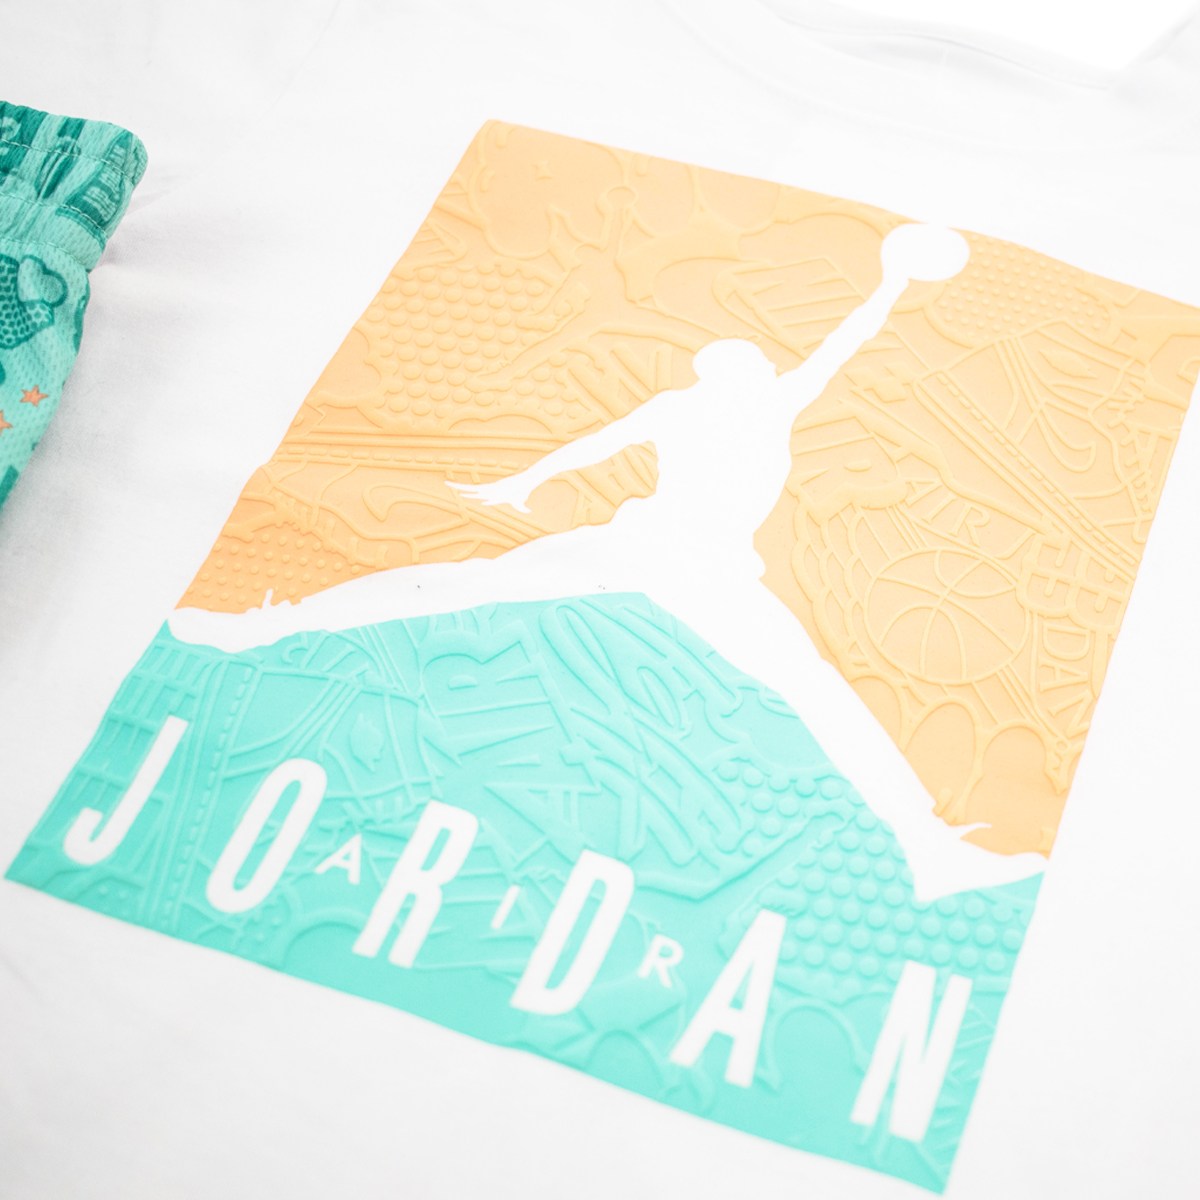 Jordan Air Elements T-Shirt and Short Set 85A600-F1P - weiss-türkis